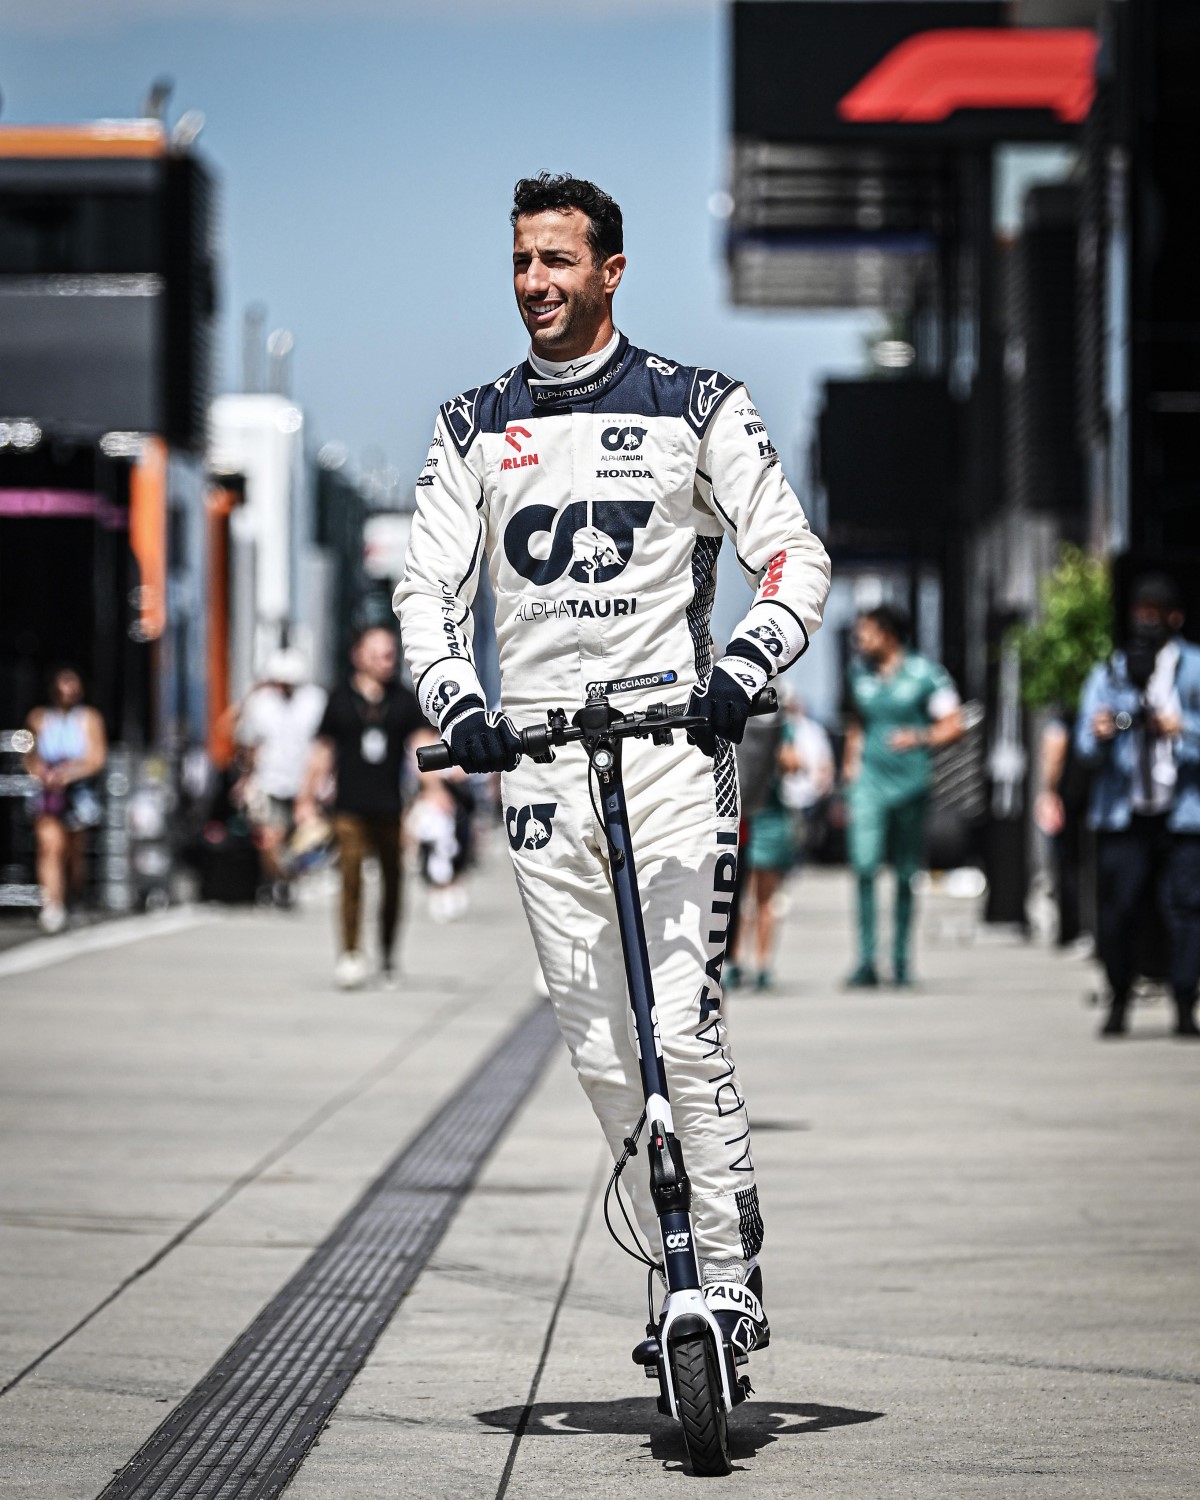 Ricciardo on a Scooter - Like he never left